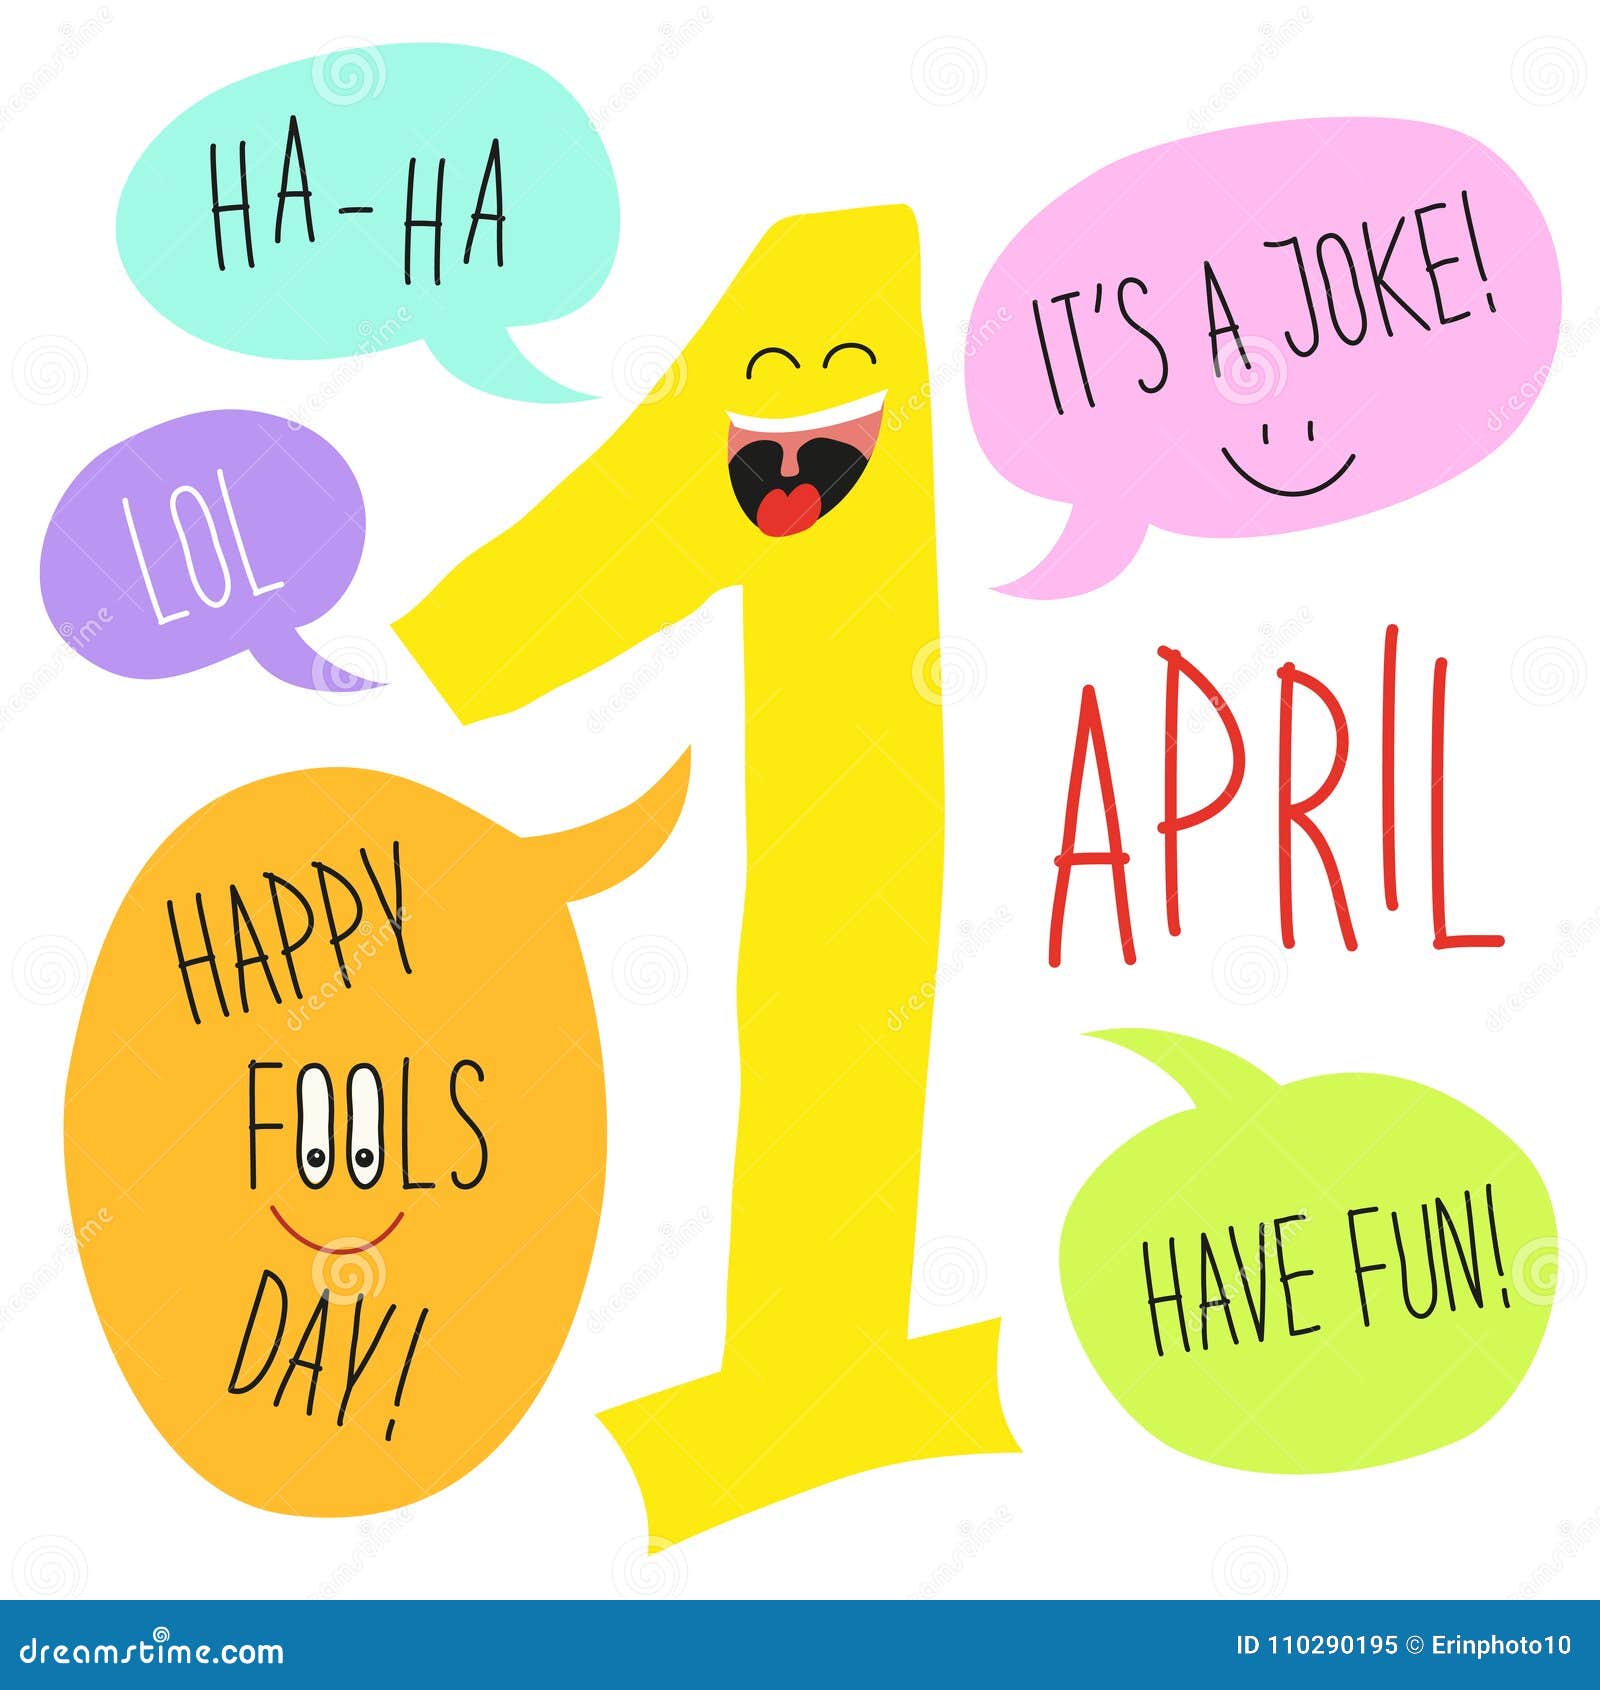 Первое апреля по английски. Плакат на день смеха. День смеха на английском. 1st April Fools Day. April 1 - April Fool's Day.